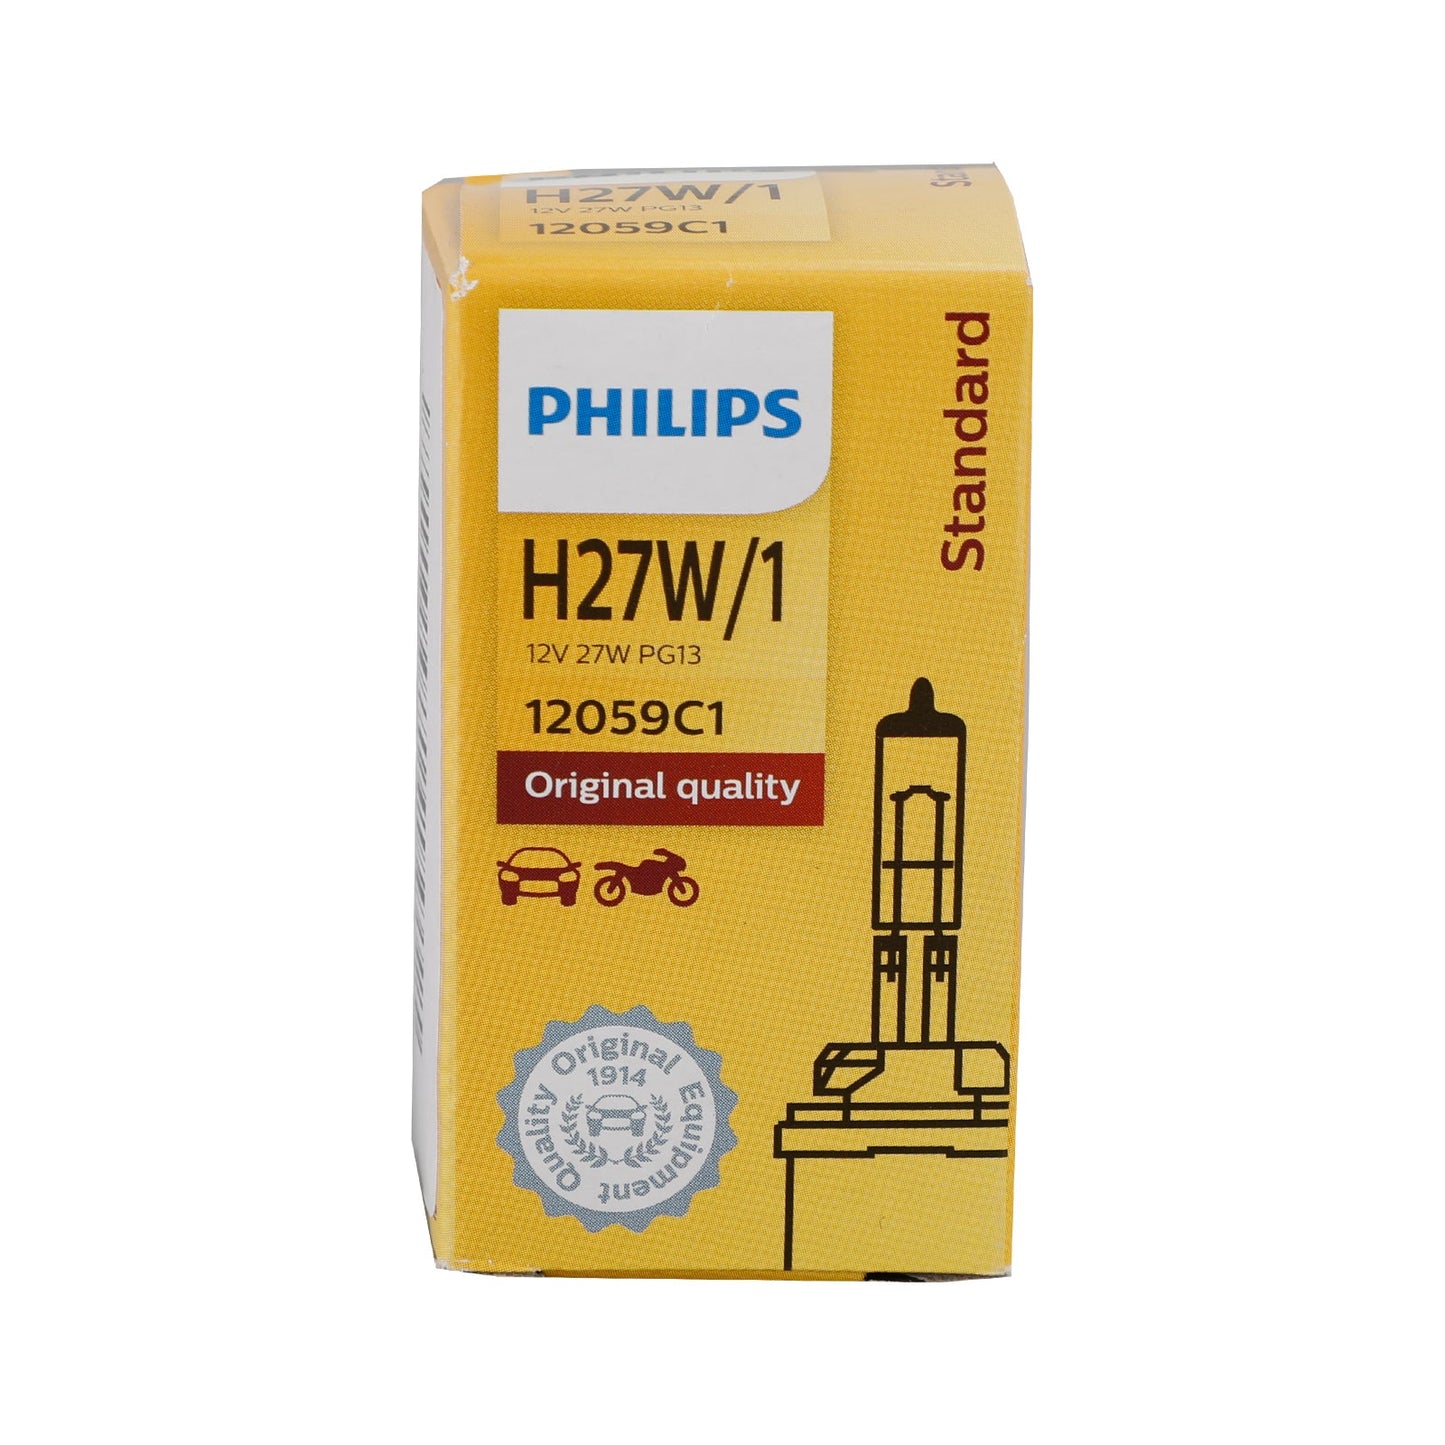 For Philips 12059C1 Standard Halogen Headlight H27W/1 12V27W PG13